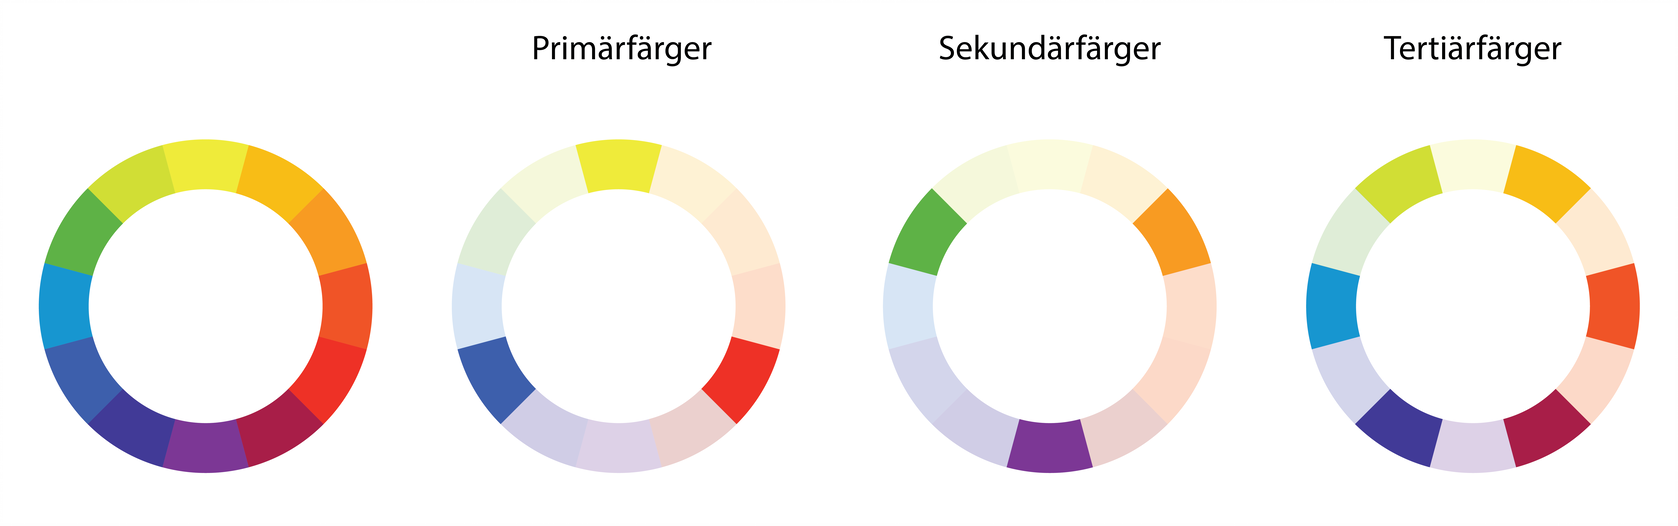 primärfärger (grundfärger), sekundärfärger och tertiärfärger